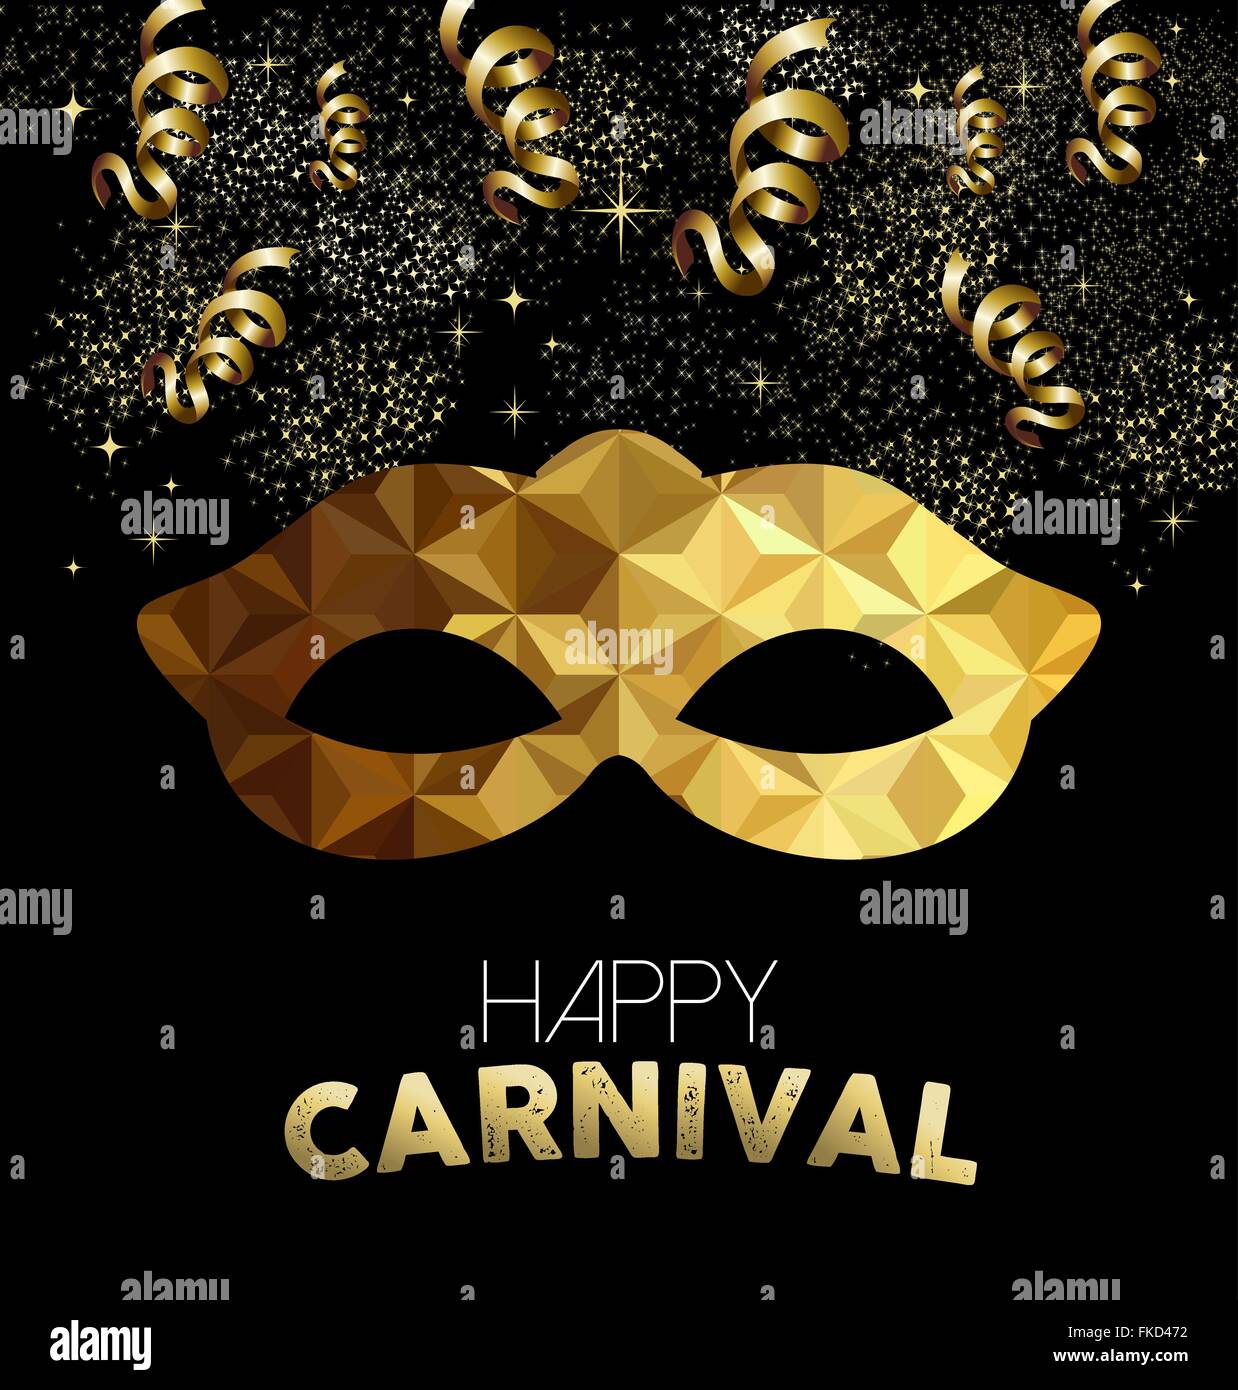 Carnaval heureux conception, masque d'or à faible formes poly, Serpentins et confettis partie arrière-plan. Vecteur EPS10. Illustration de Vecteur